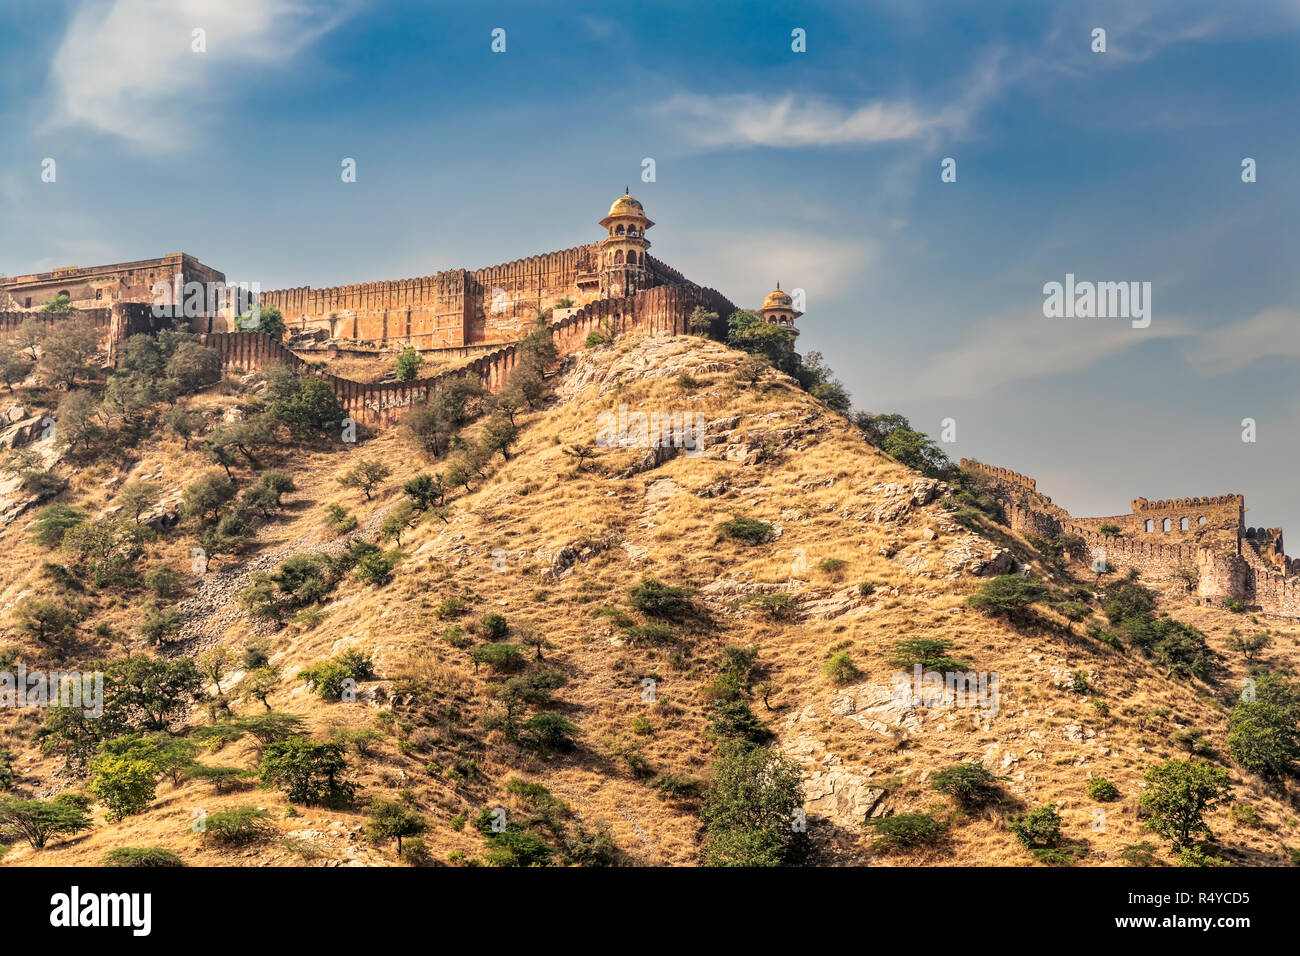 Vue depuis le Fort Amer, amer situé dans le Rajasthan, Inde 11km de Jaipur, capitale du Rajasthan. C'est la principale attraction touristique à Jaipur Banque D'Images